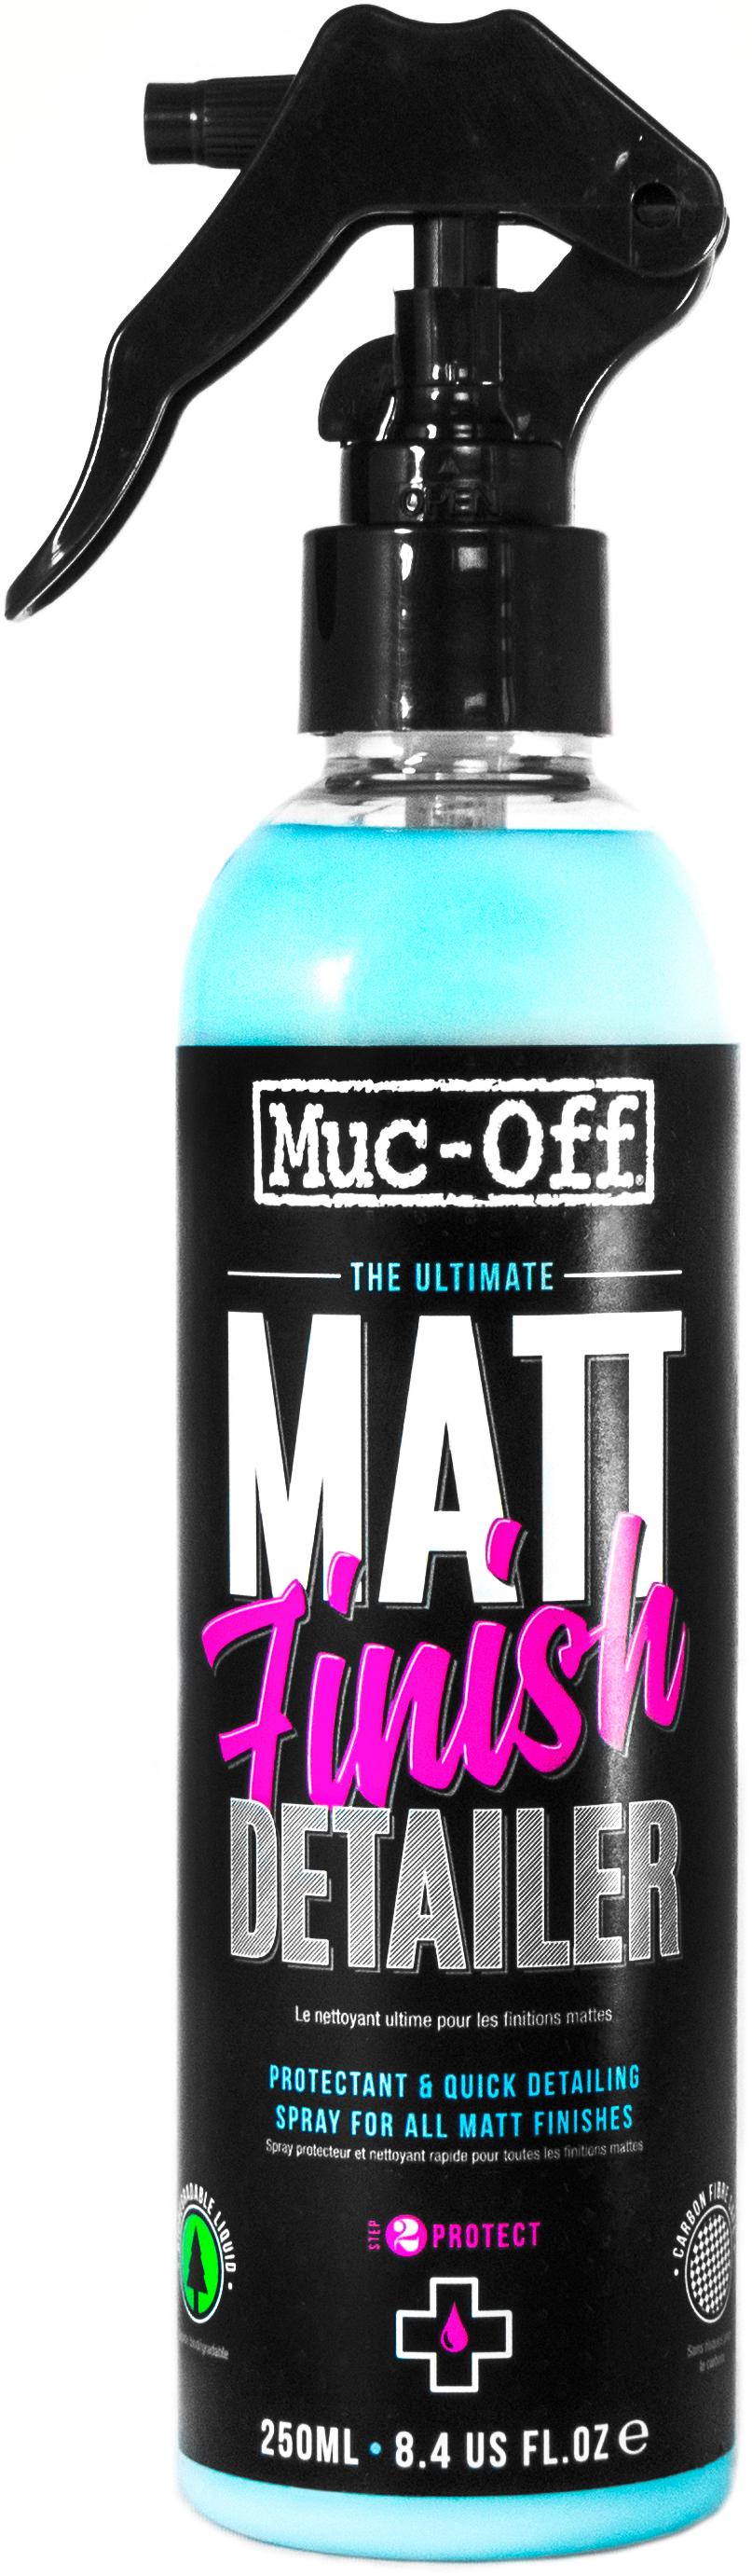 Muc-Off Matt Detailer 250Ml